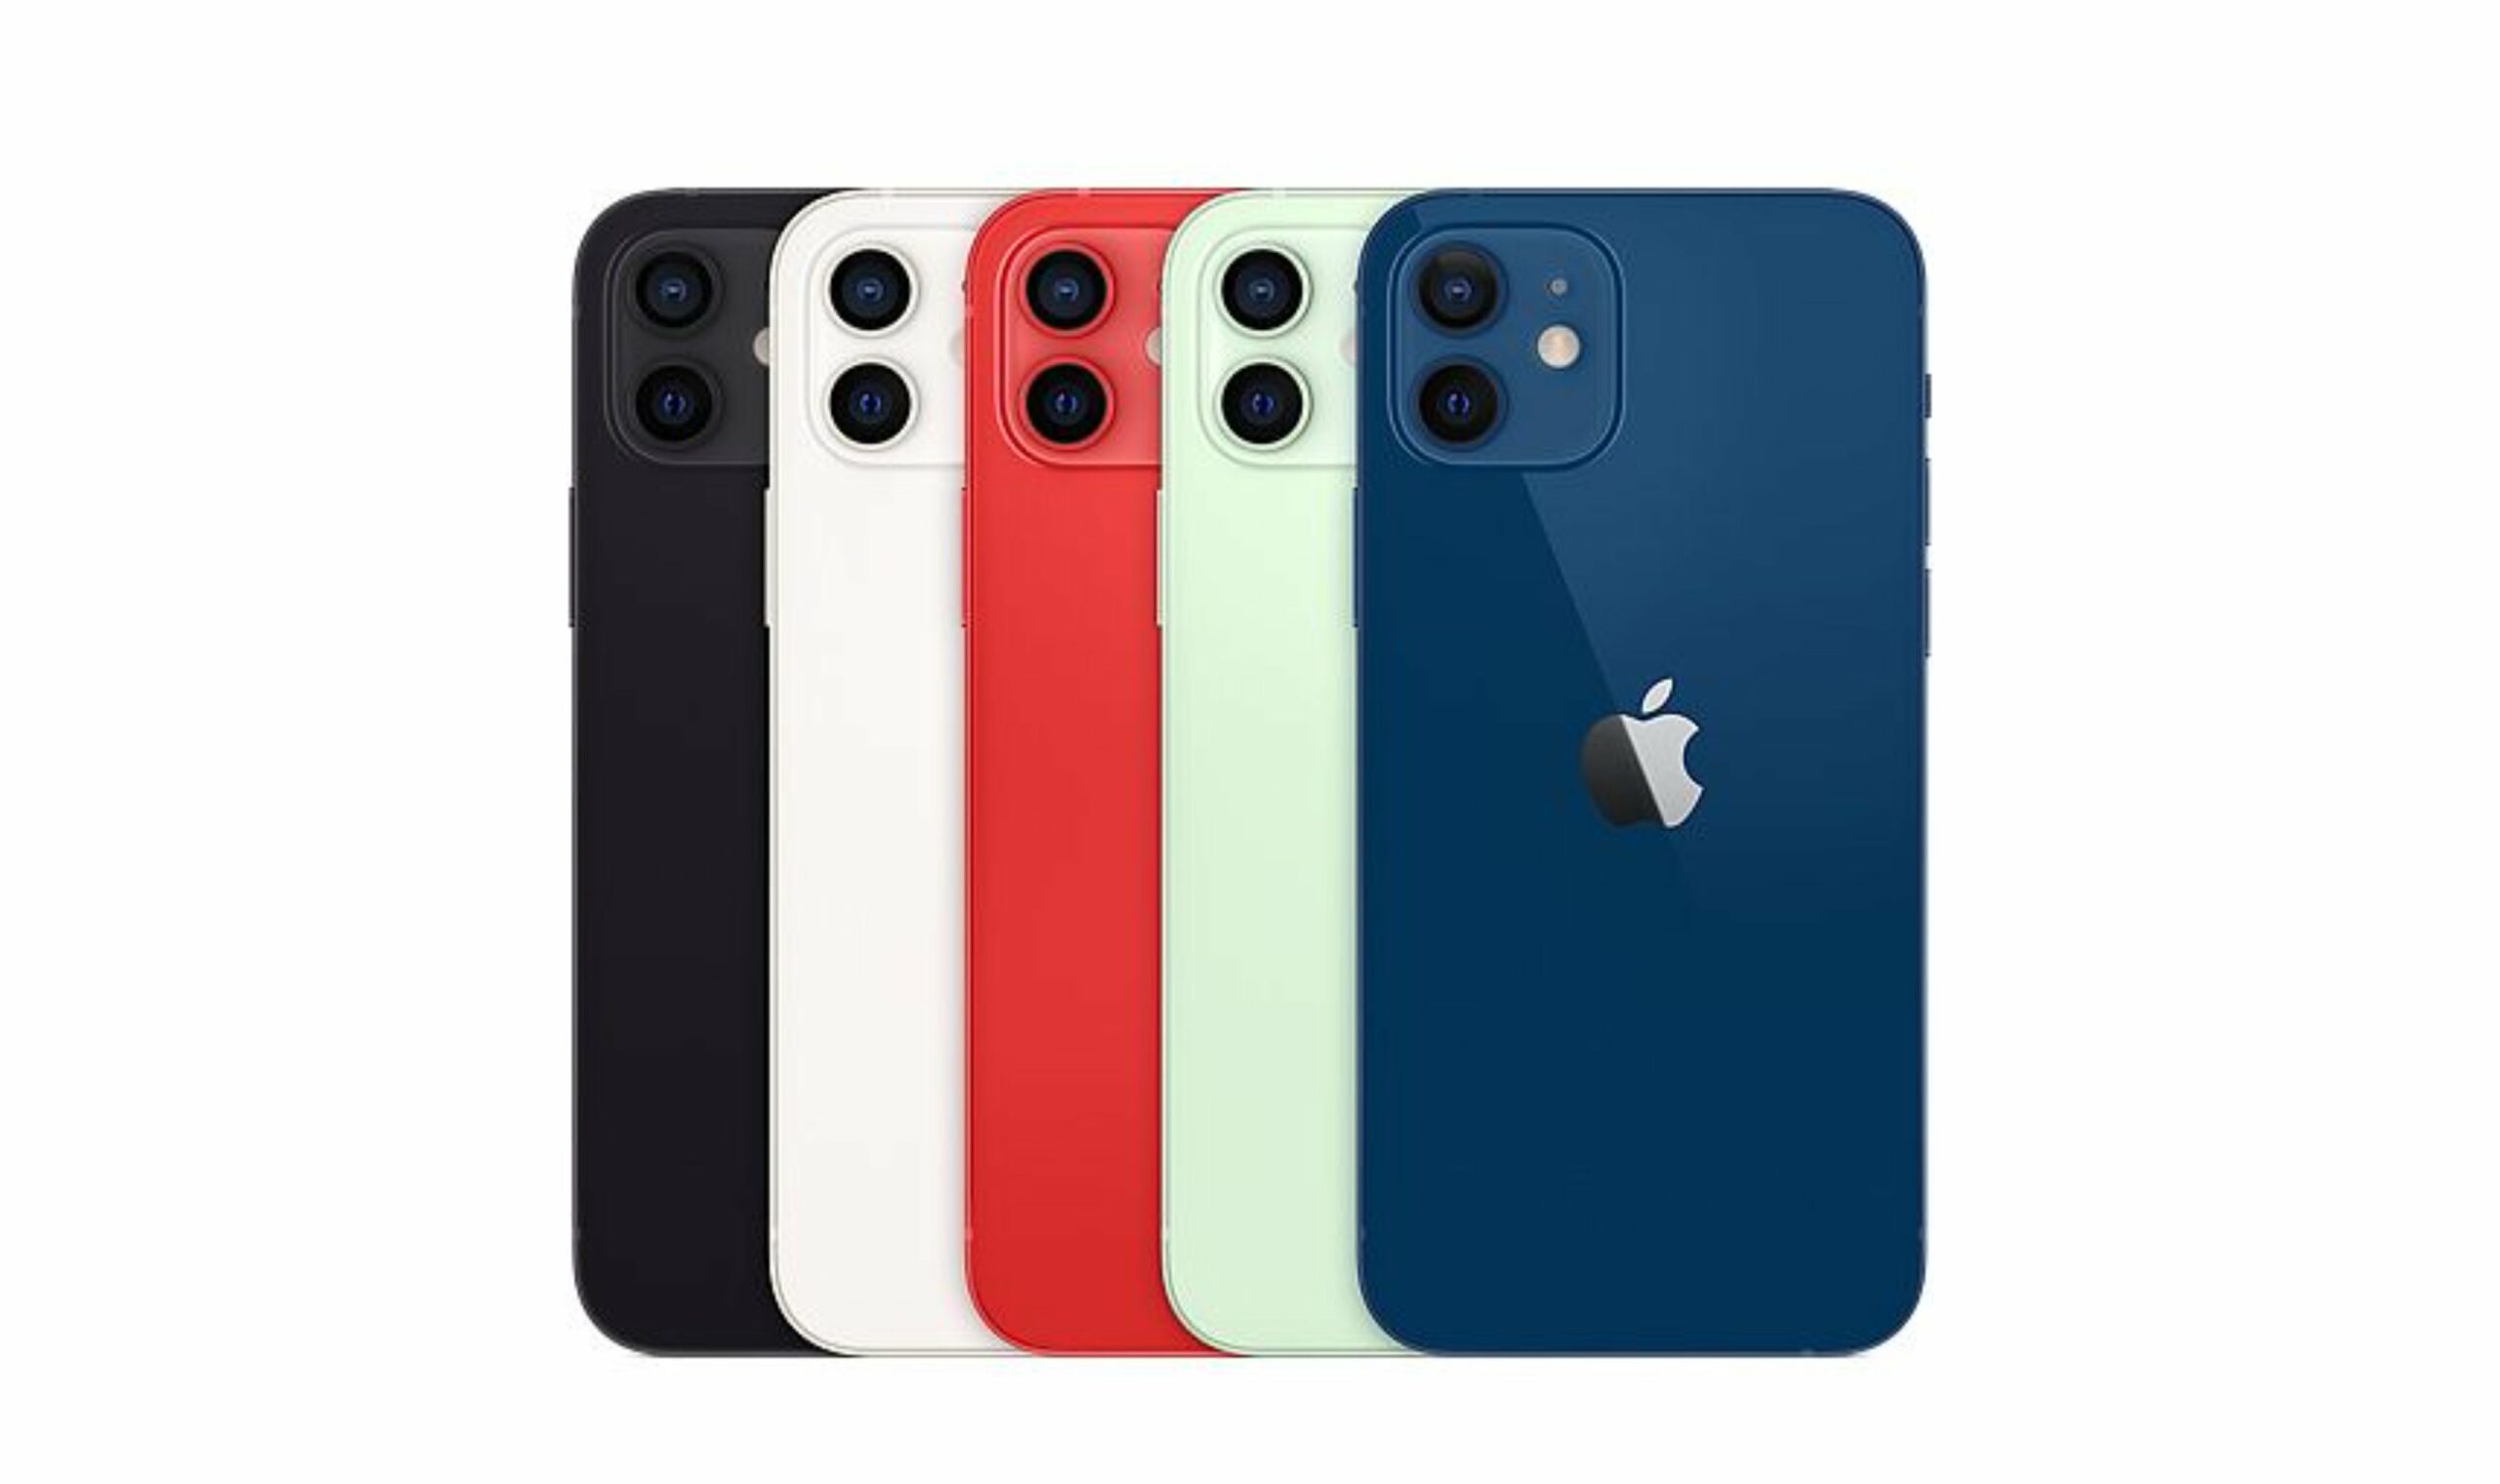 Apple iPhone 12 Toutes les couleurs présentées 02